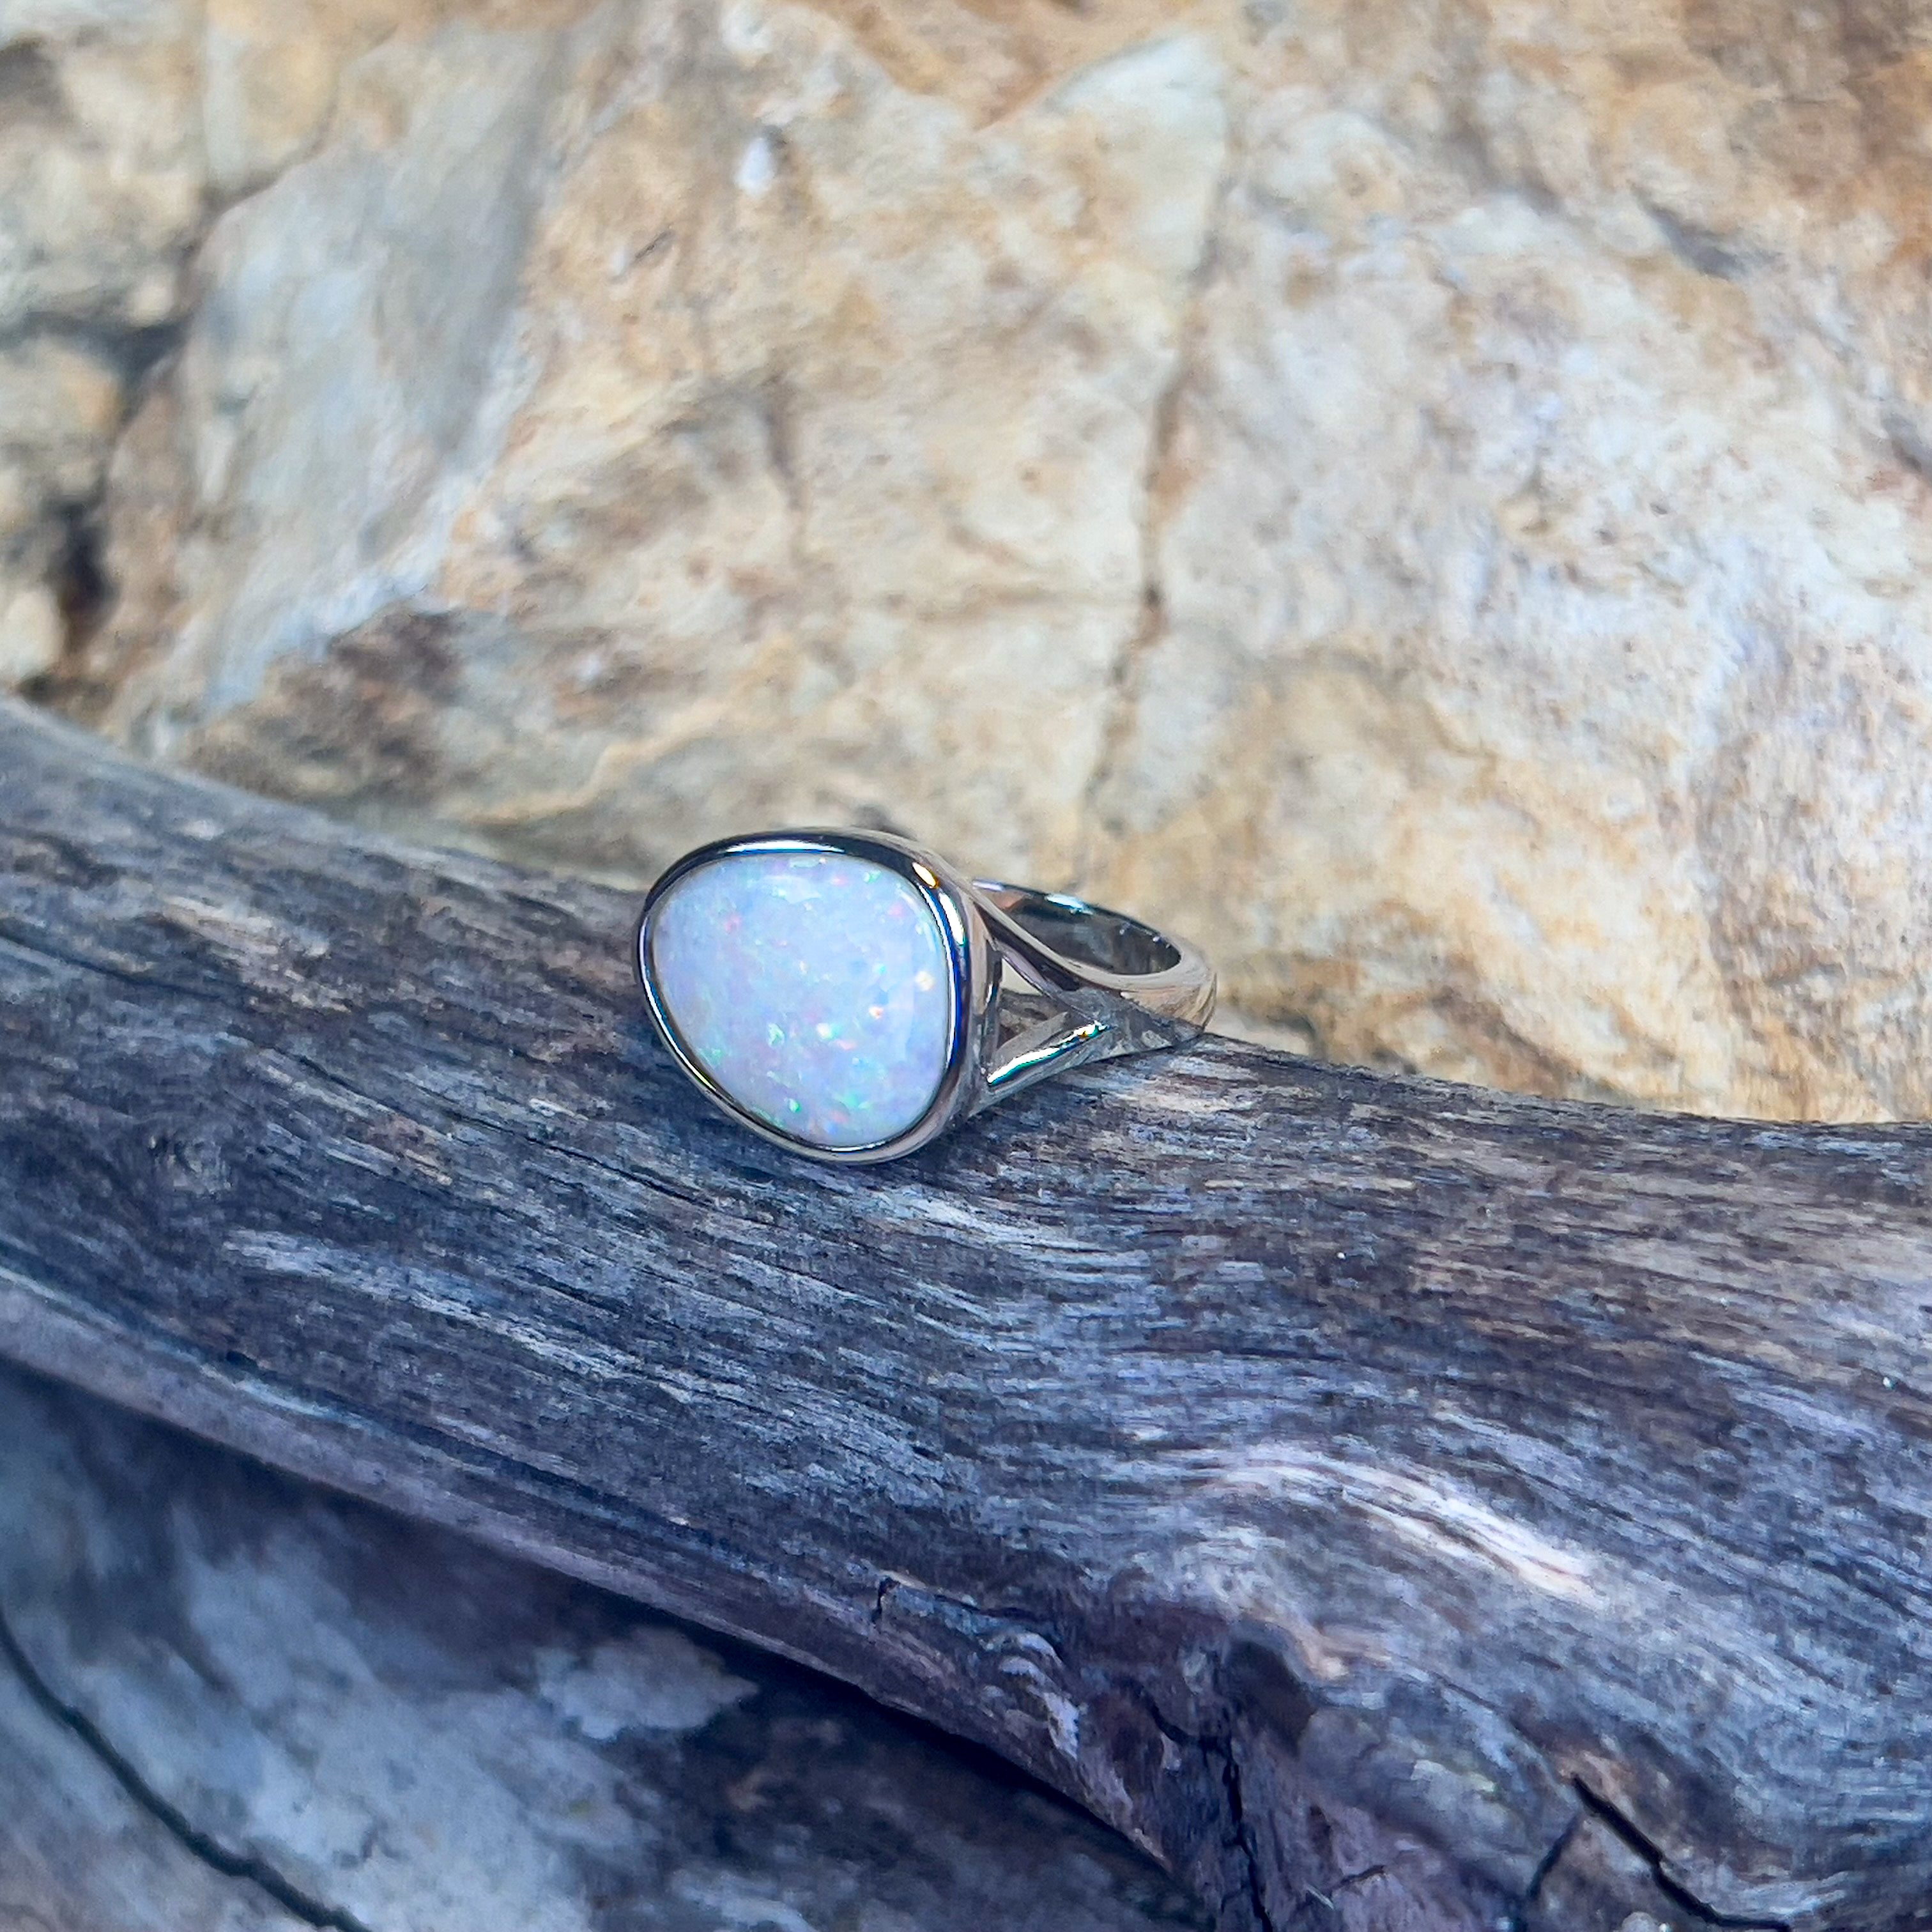 Sterling Silver bezel set white opal 2.2ct ring - Masterpiece Jewellery Opal & Gems Sydney Australia | Online Shop